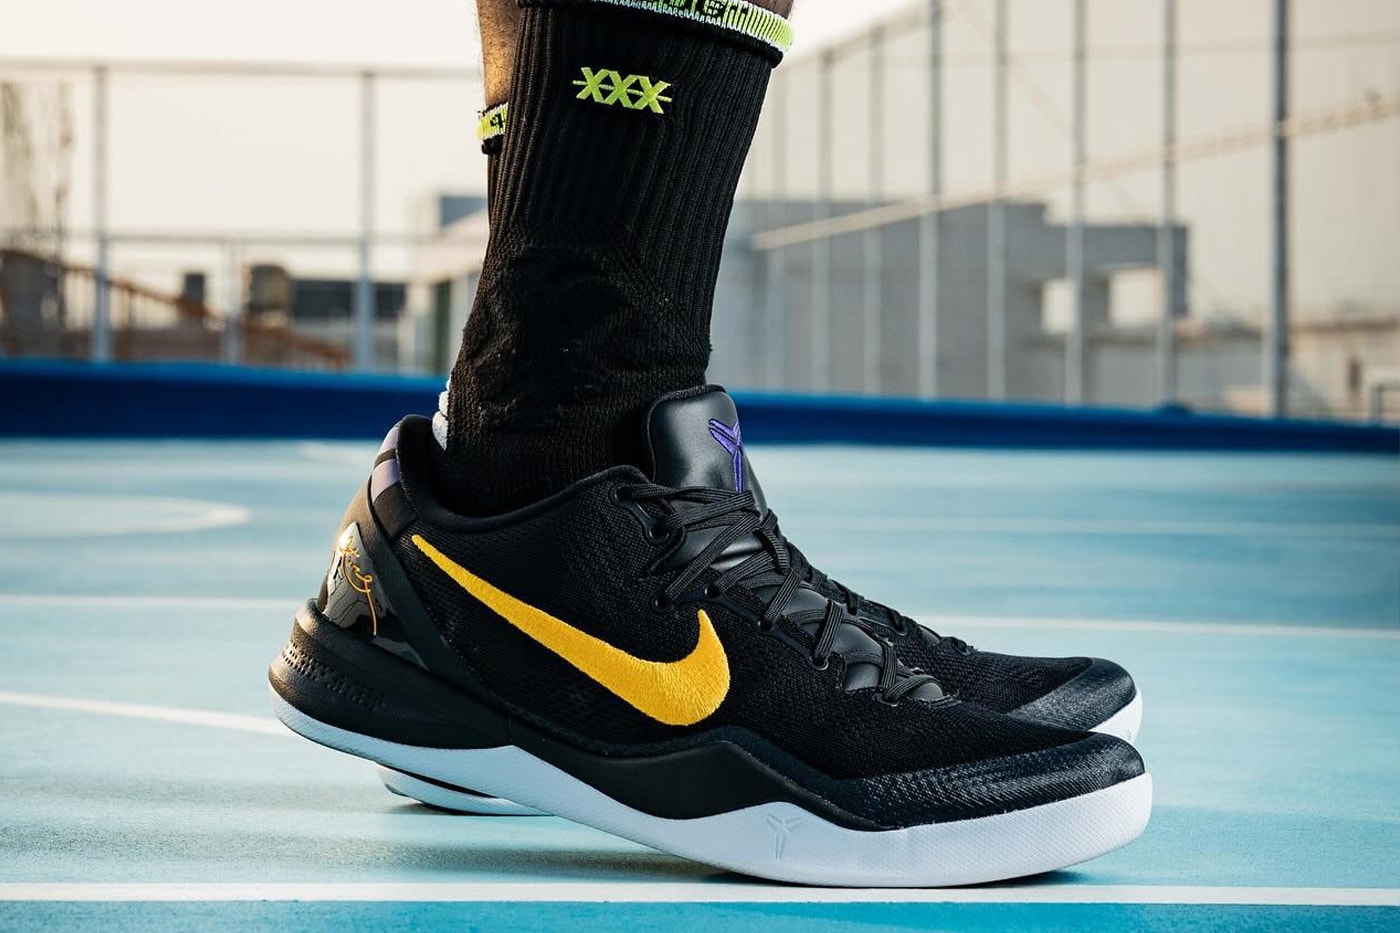 Detailed Look at the Nike Kobe 8 Protro 